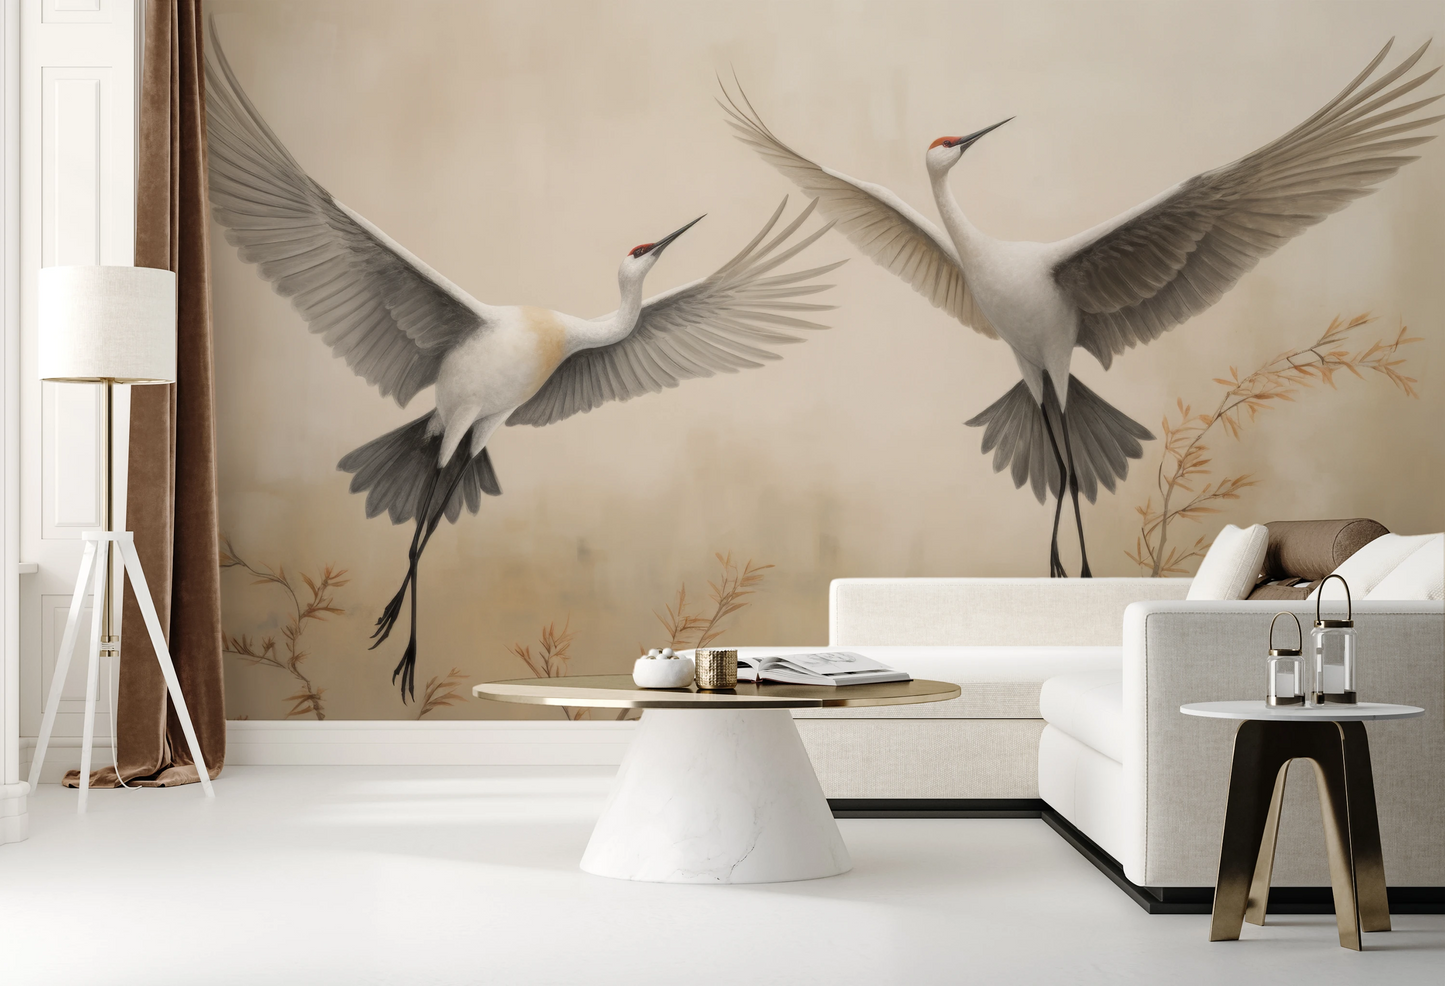 Fototapeta malowana o nazwie Wings of Serenity pokazana w aranżacji wnętrza.